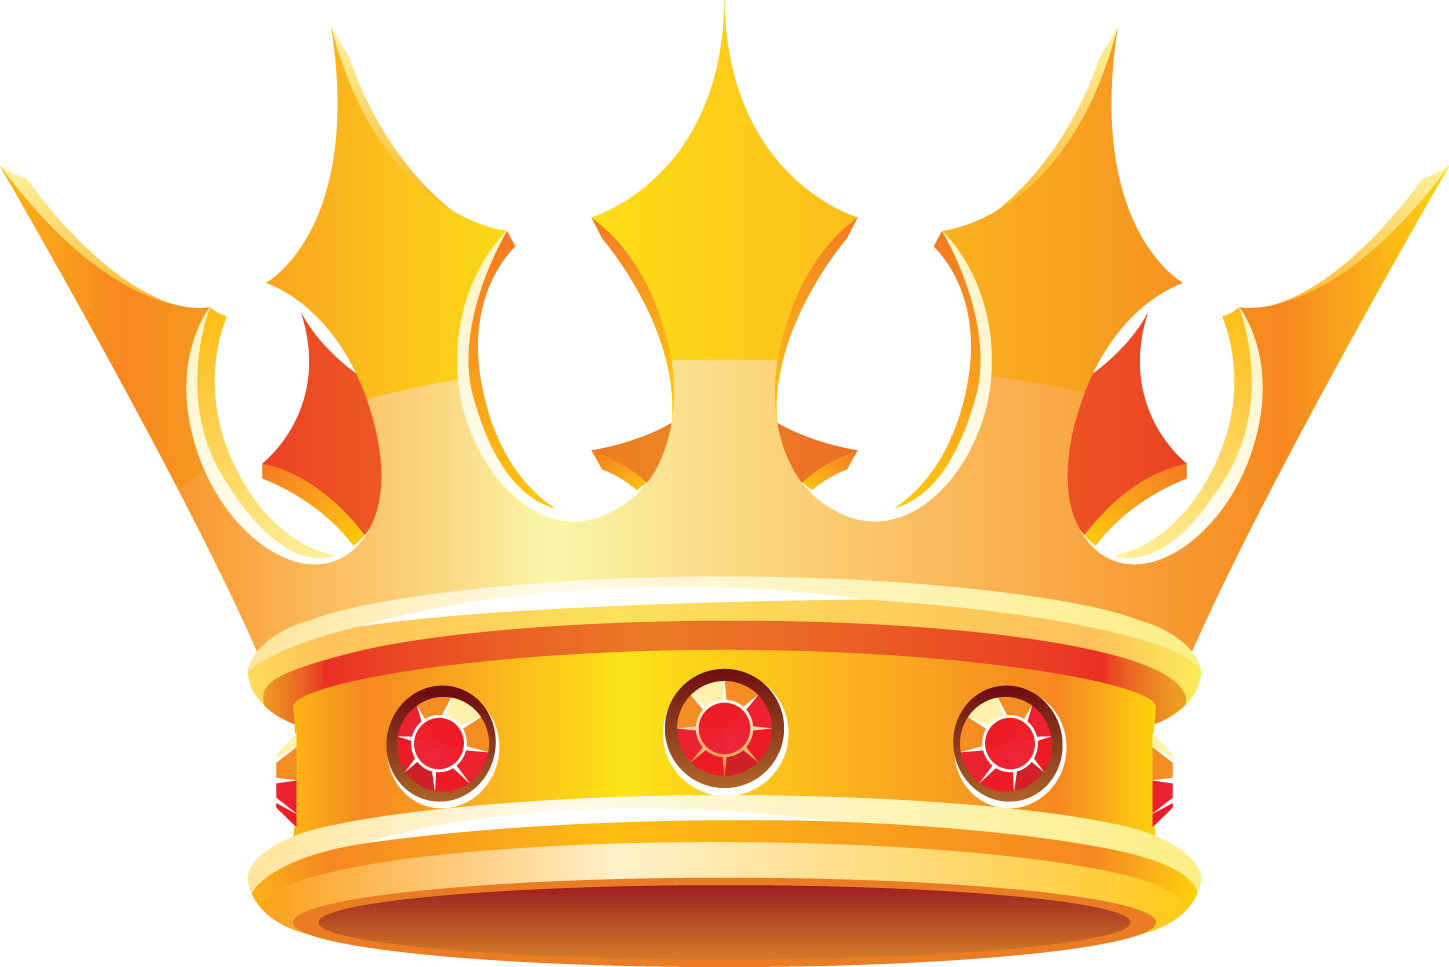 King Crown PNG Free Download